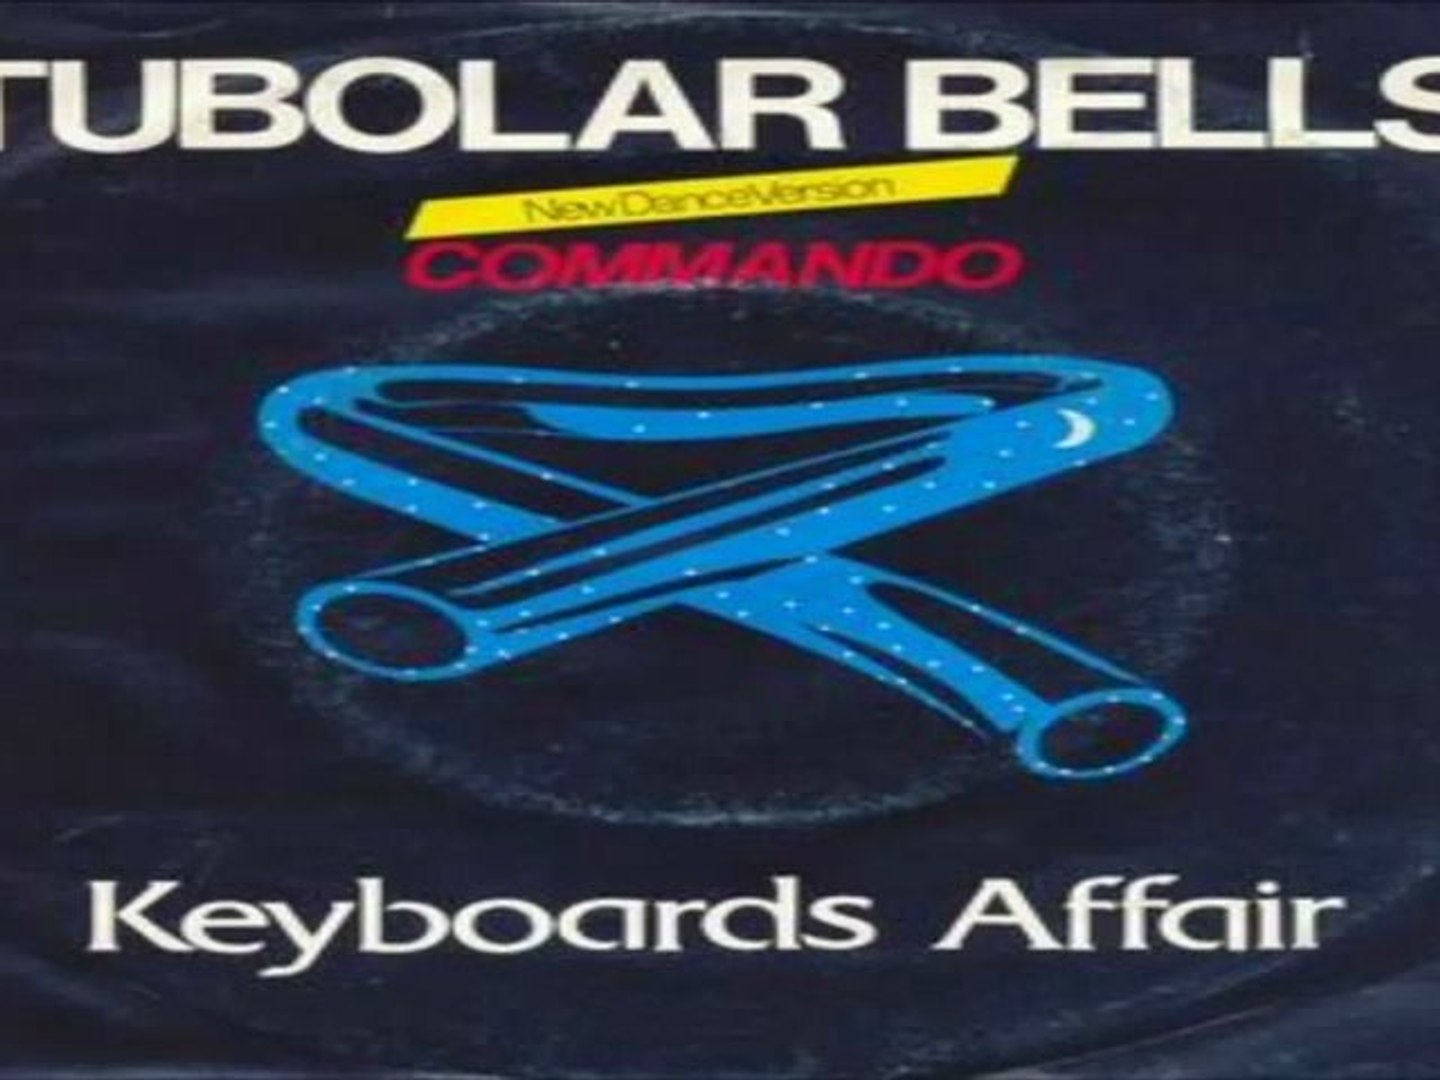 Tubolar bells KEYBOARDS AFFAIR 1983 - Video Dailymotion